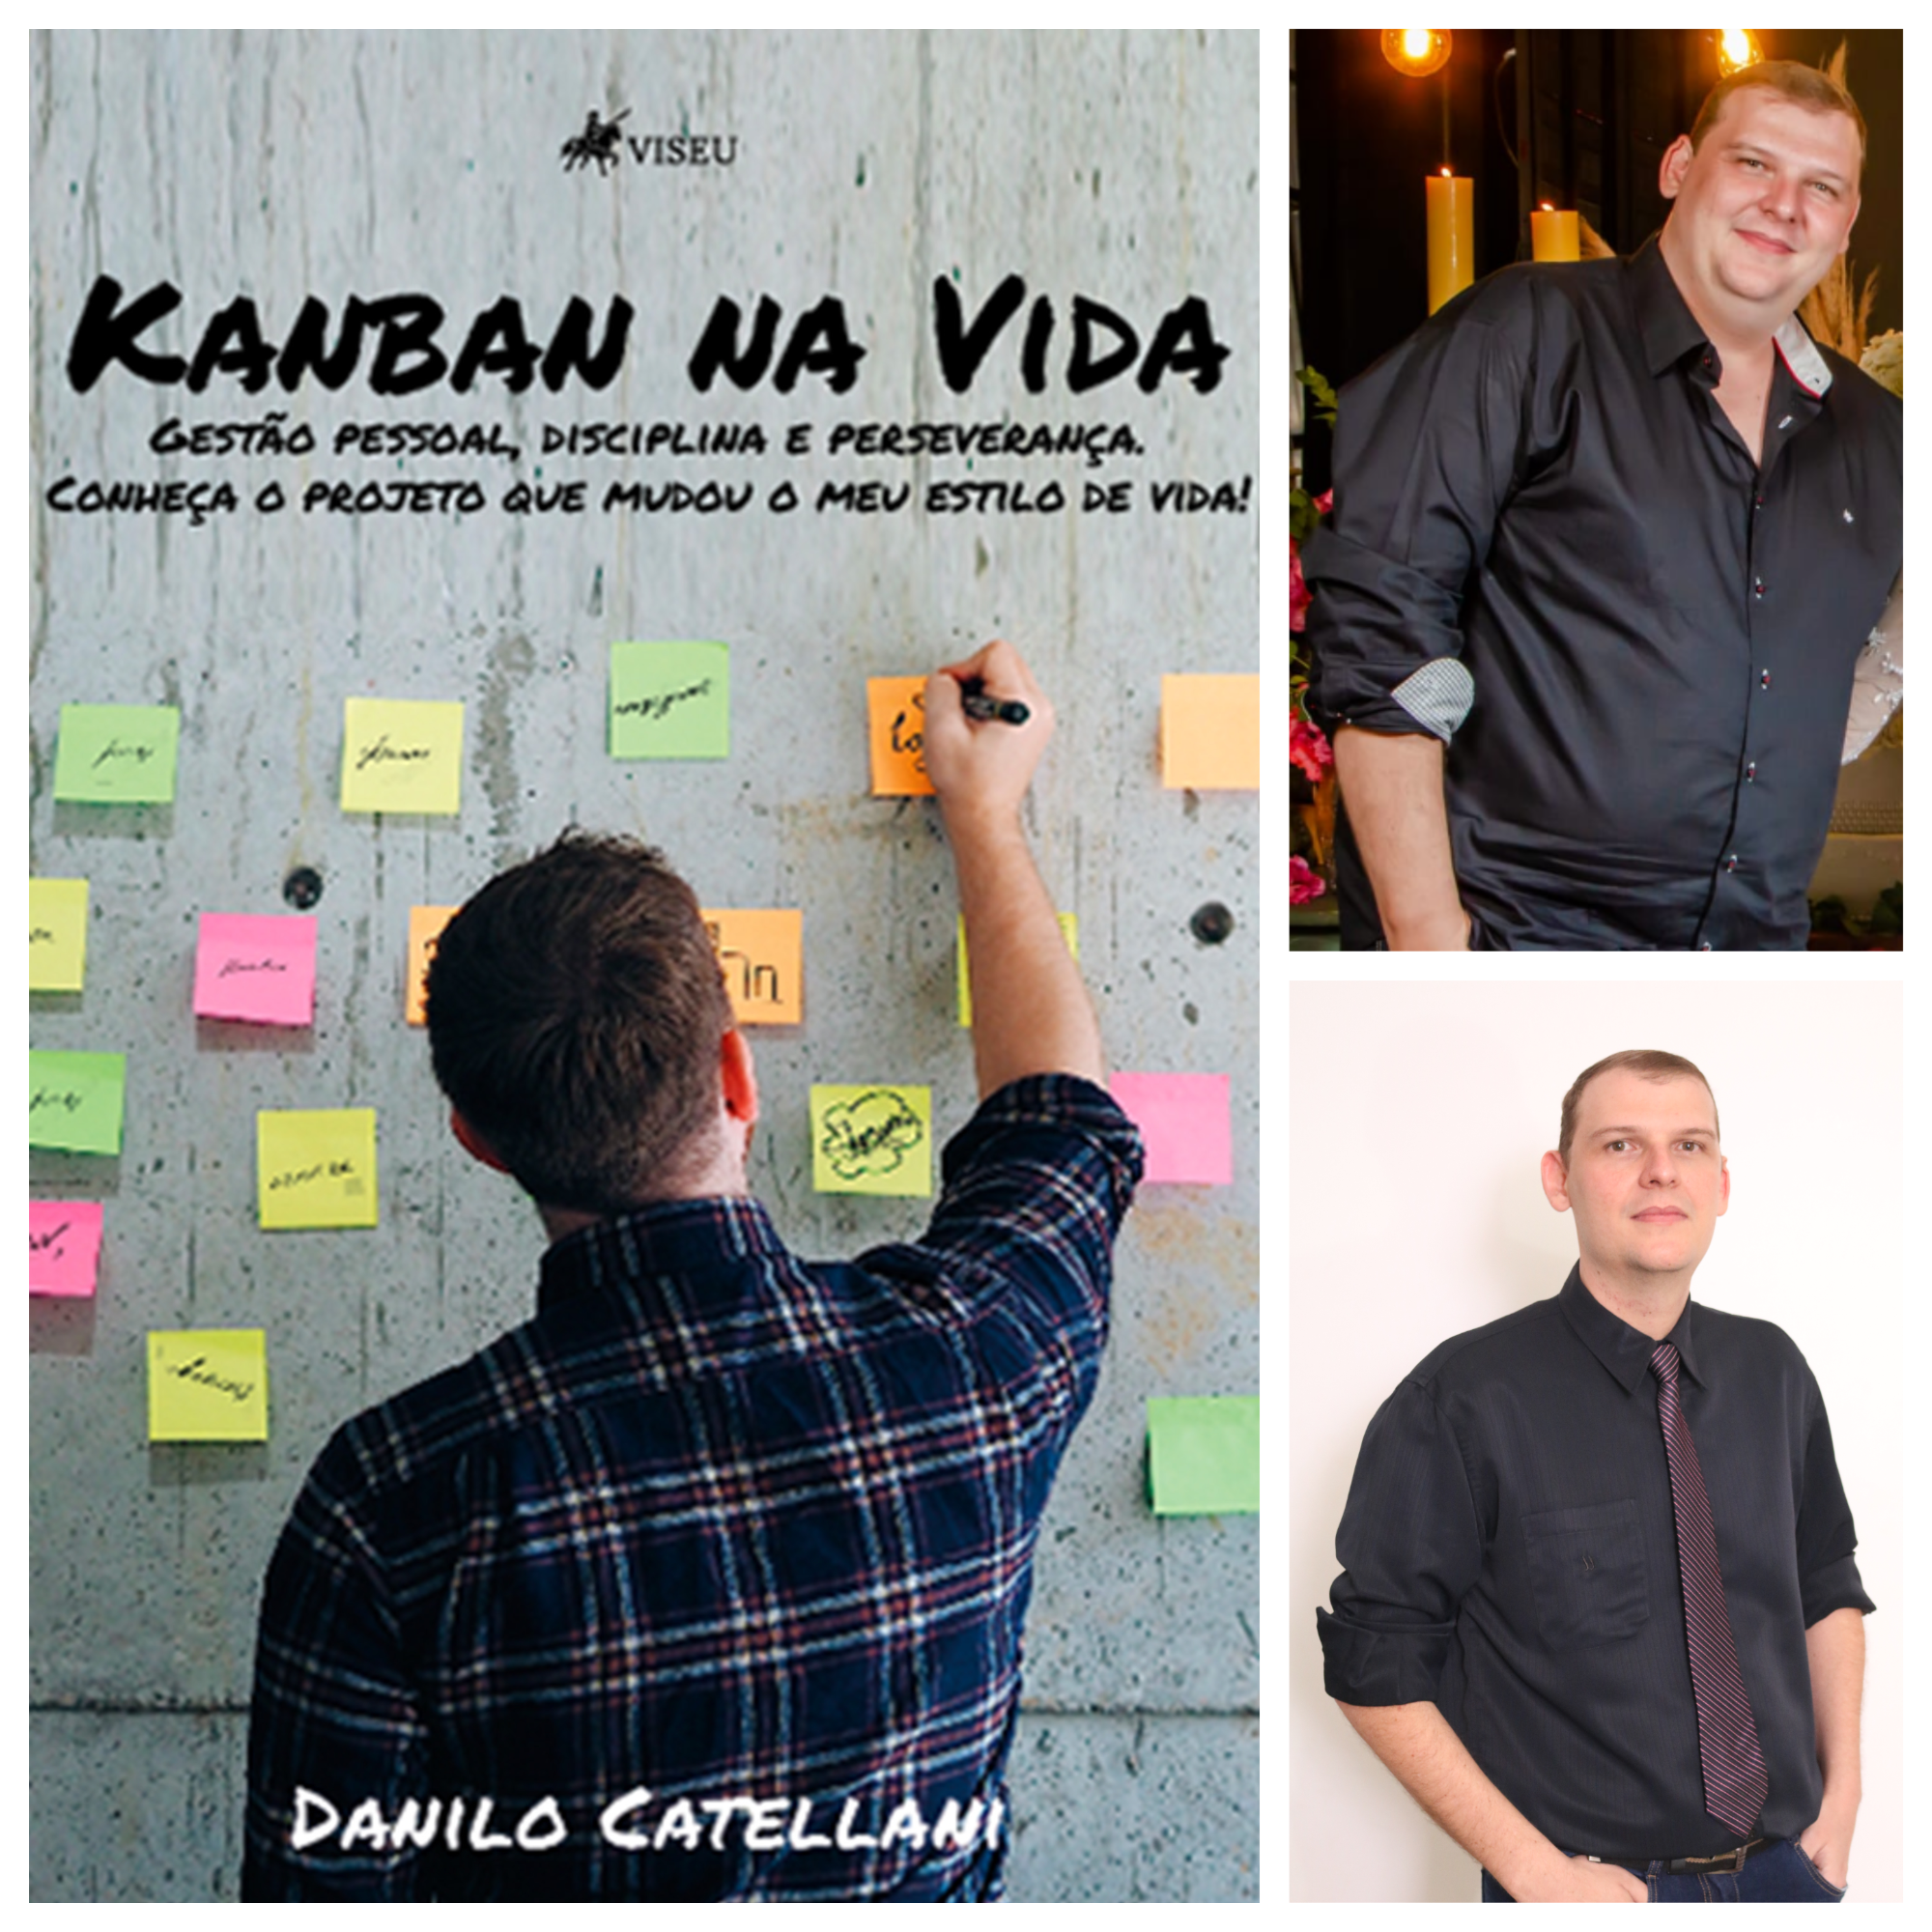 Gestão, disciplina e perseverança: Danilo Catellani lança livro contando como construiu novos hábitos utilizando o Kanban